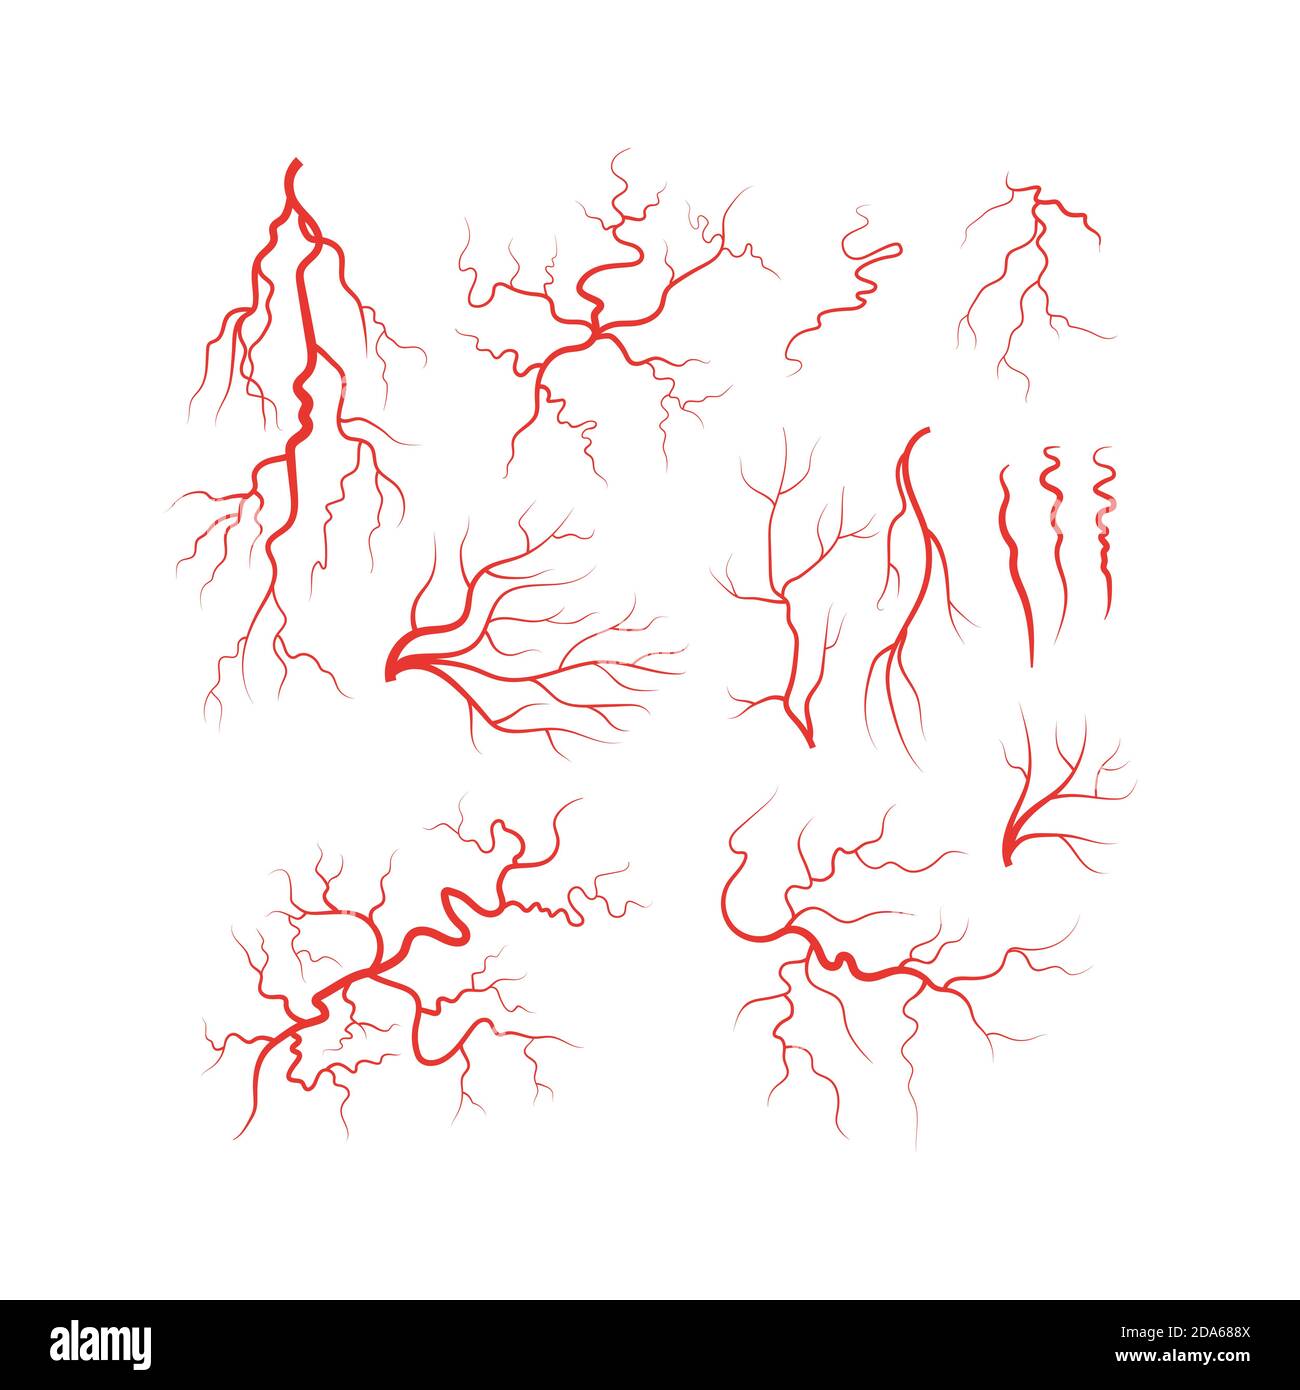 Vecteur de l'ensemble de vaisseaux sanguins rouges des veines humaines Illustration de Vecteur